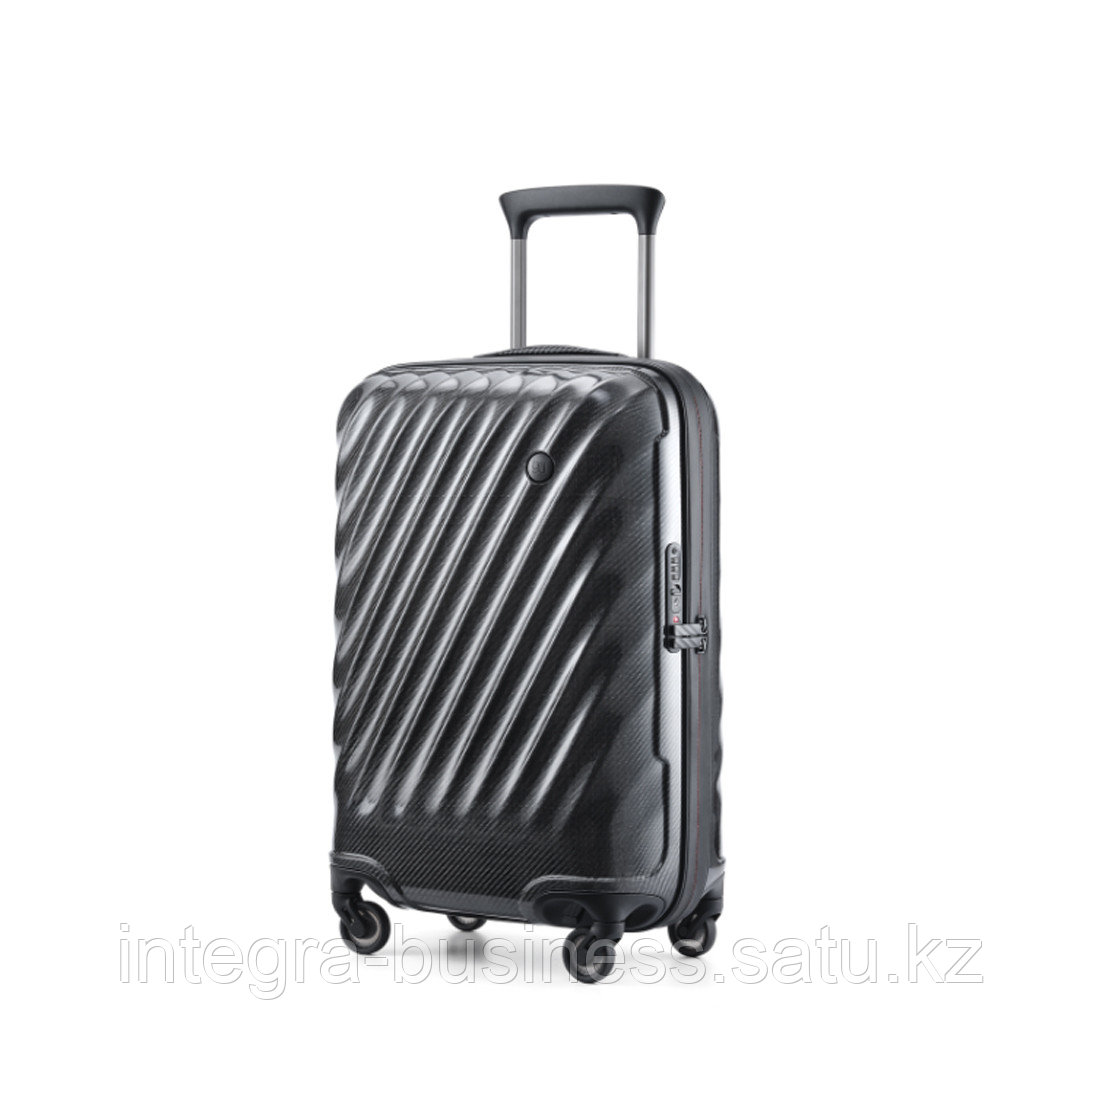 Чемодан NINETYGO Ultralight Luggage 20'' Черный, фото 1